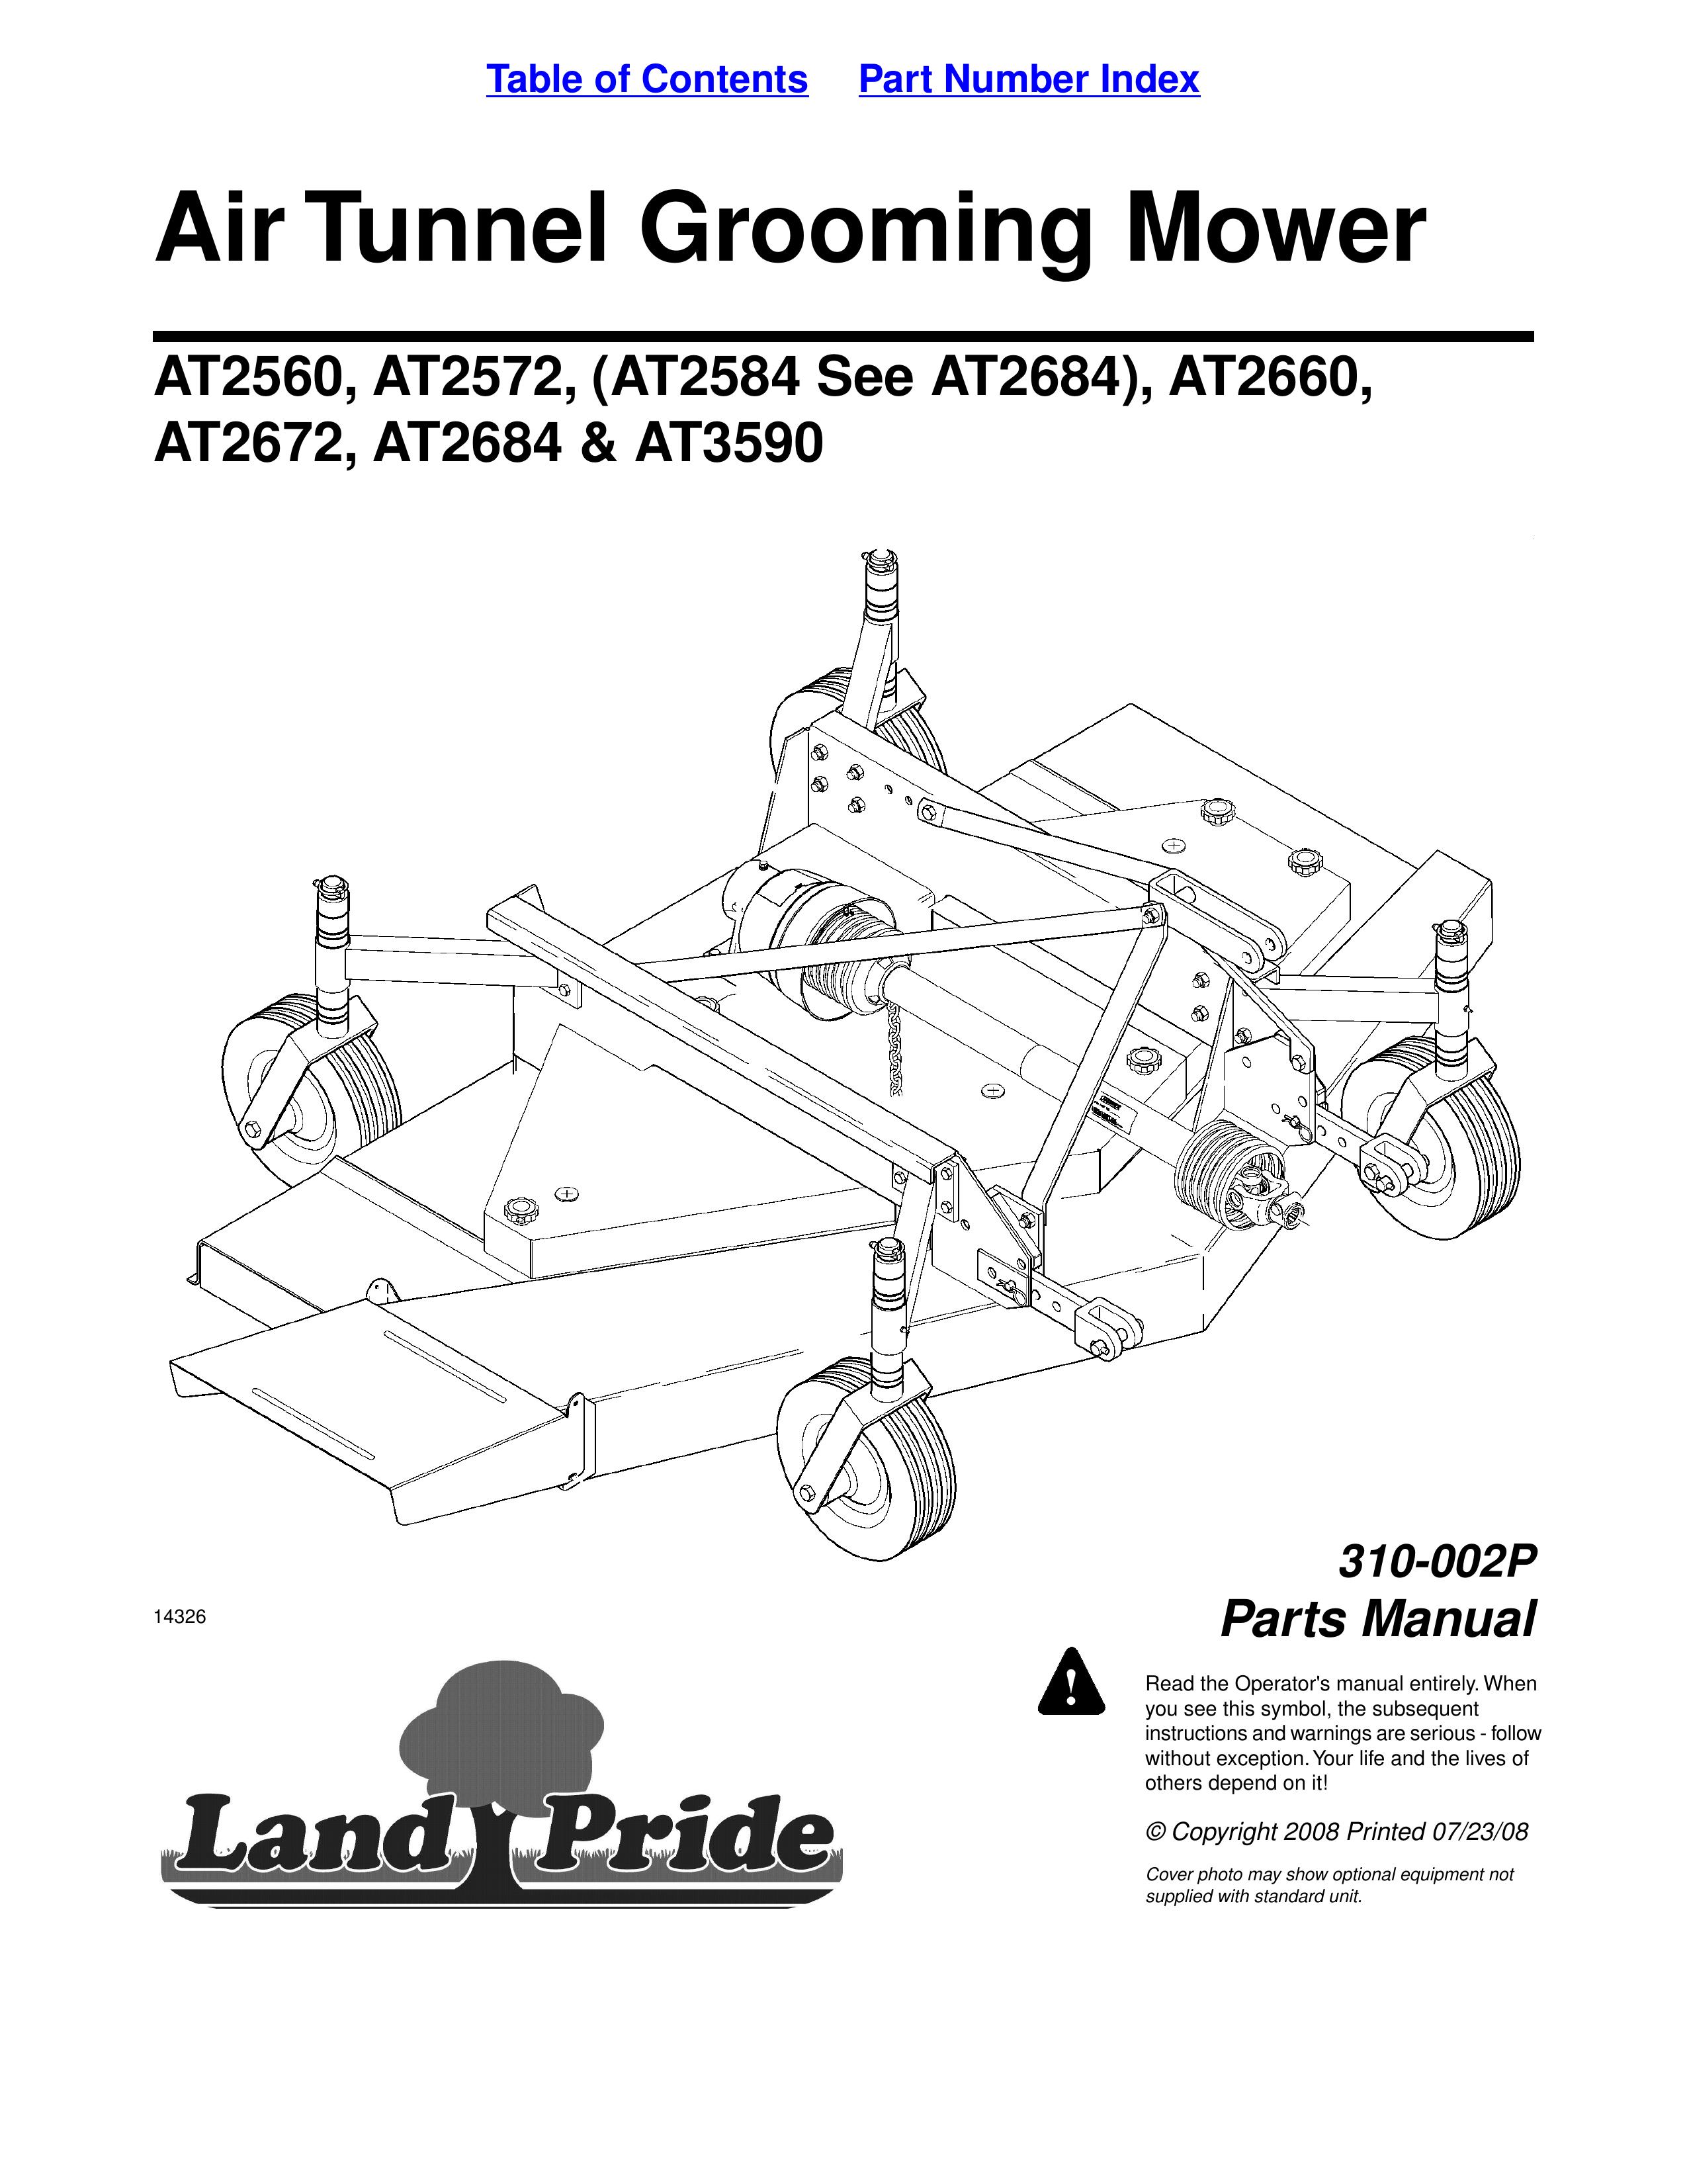 Land Pride AT2684 Lawn Mower User Manual